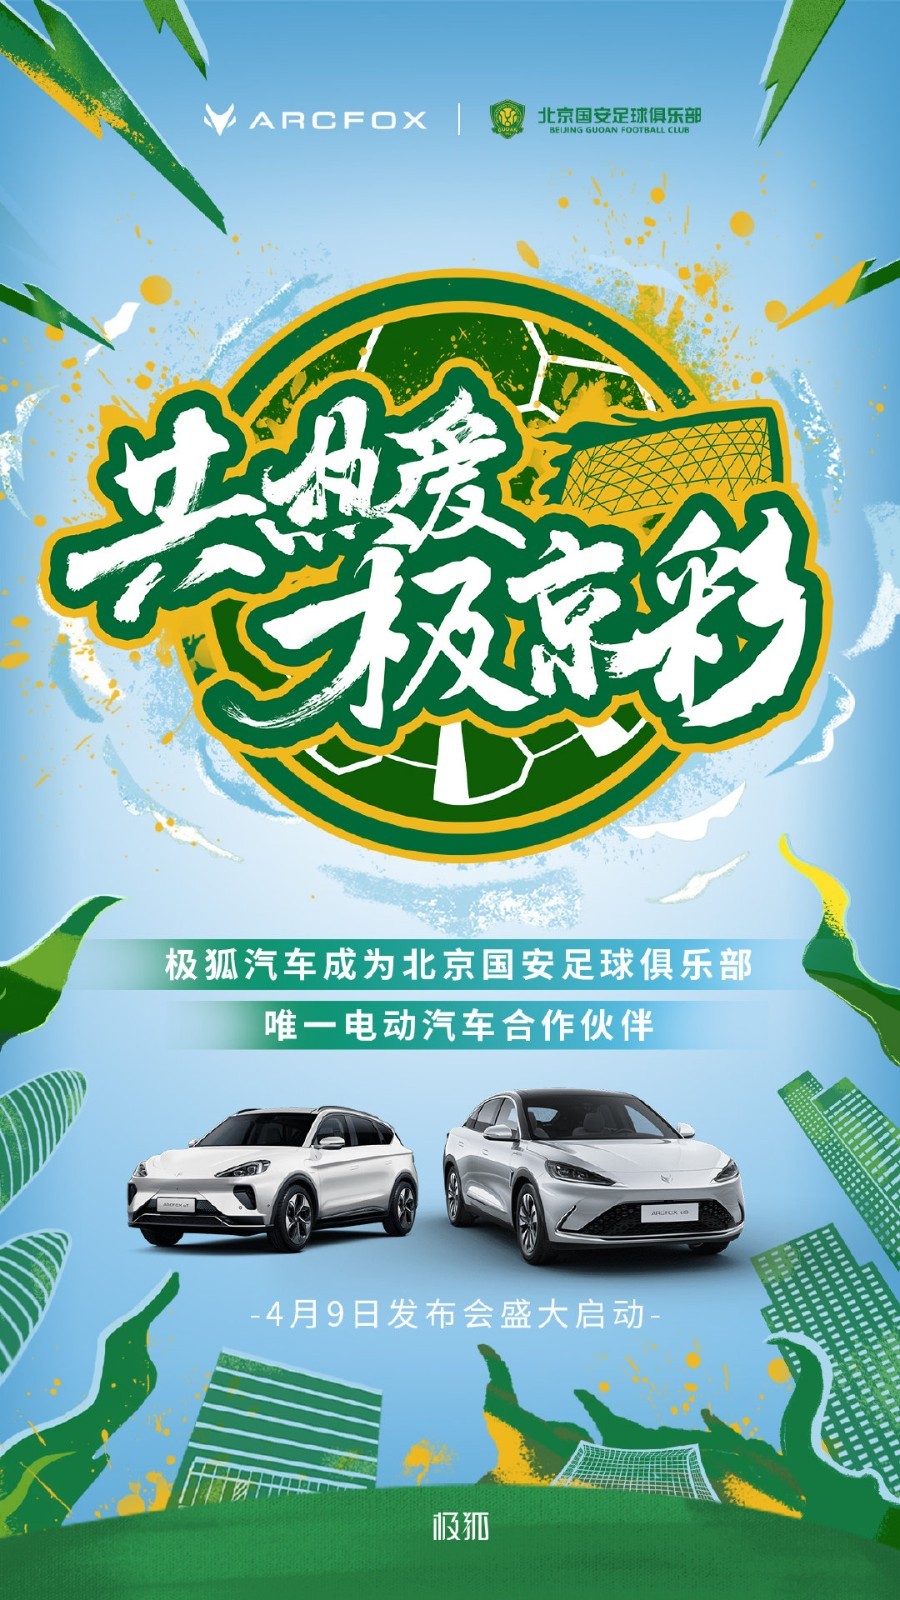 极狐汽车成为北京国安足球俱乐部唯一电动汽车合作伙伴